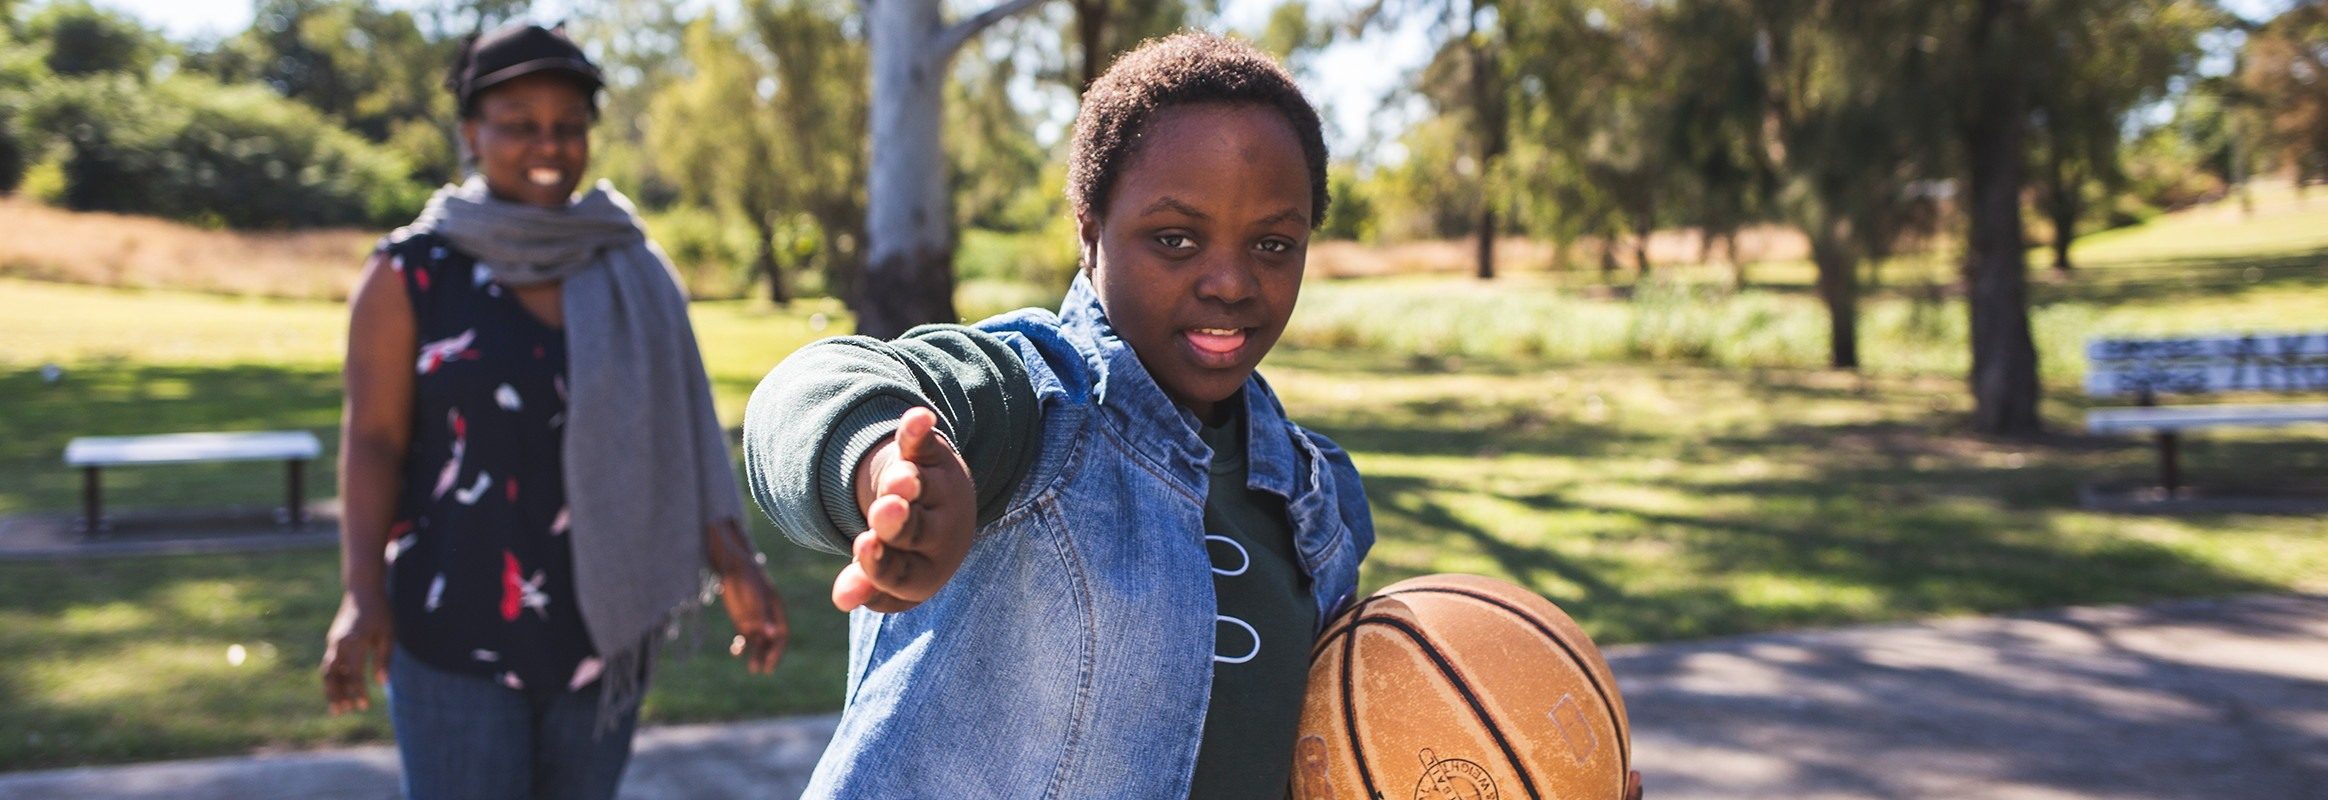 Bonita, une adolescente malawienne sur le terrain de basketball, faisant des gestes en direction de la caméra, avec une autre femme noire sur le terrain à l'arrière-plan